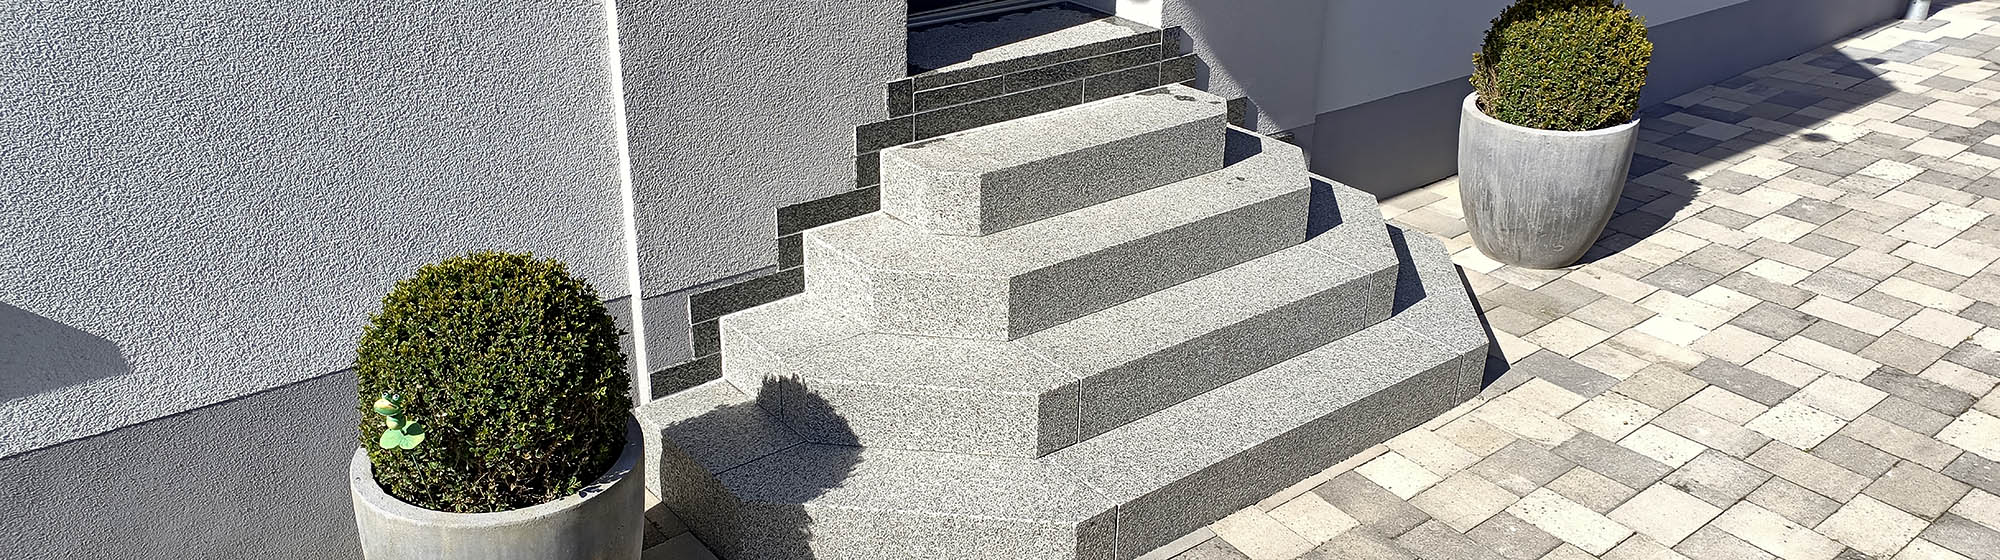 Treppeneingang aus Granitblockstufen, Mühlbach